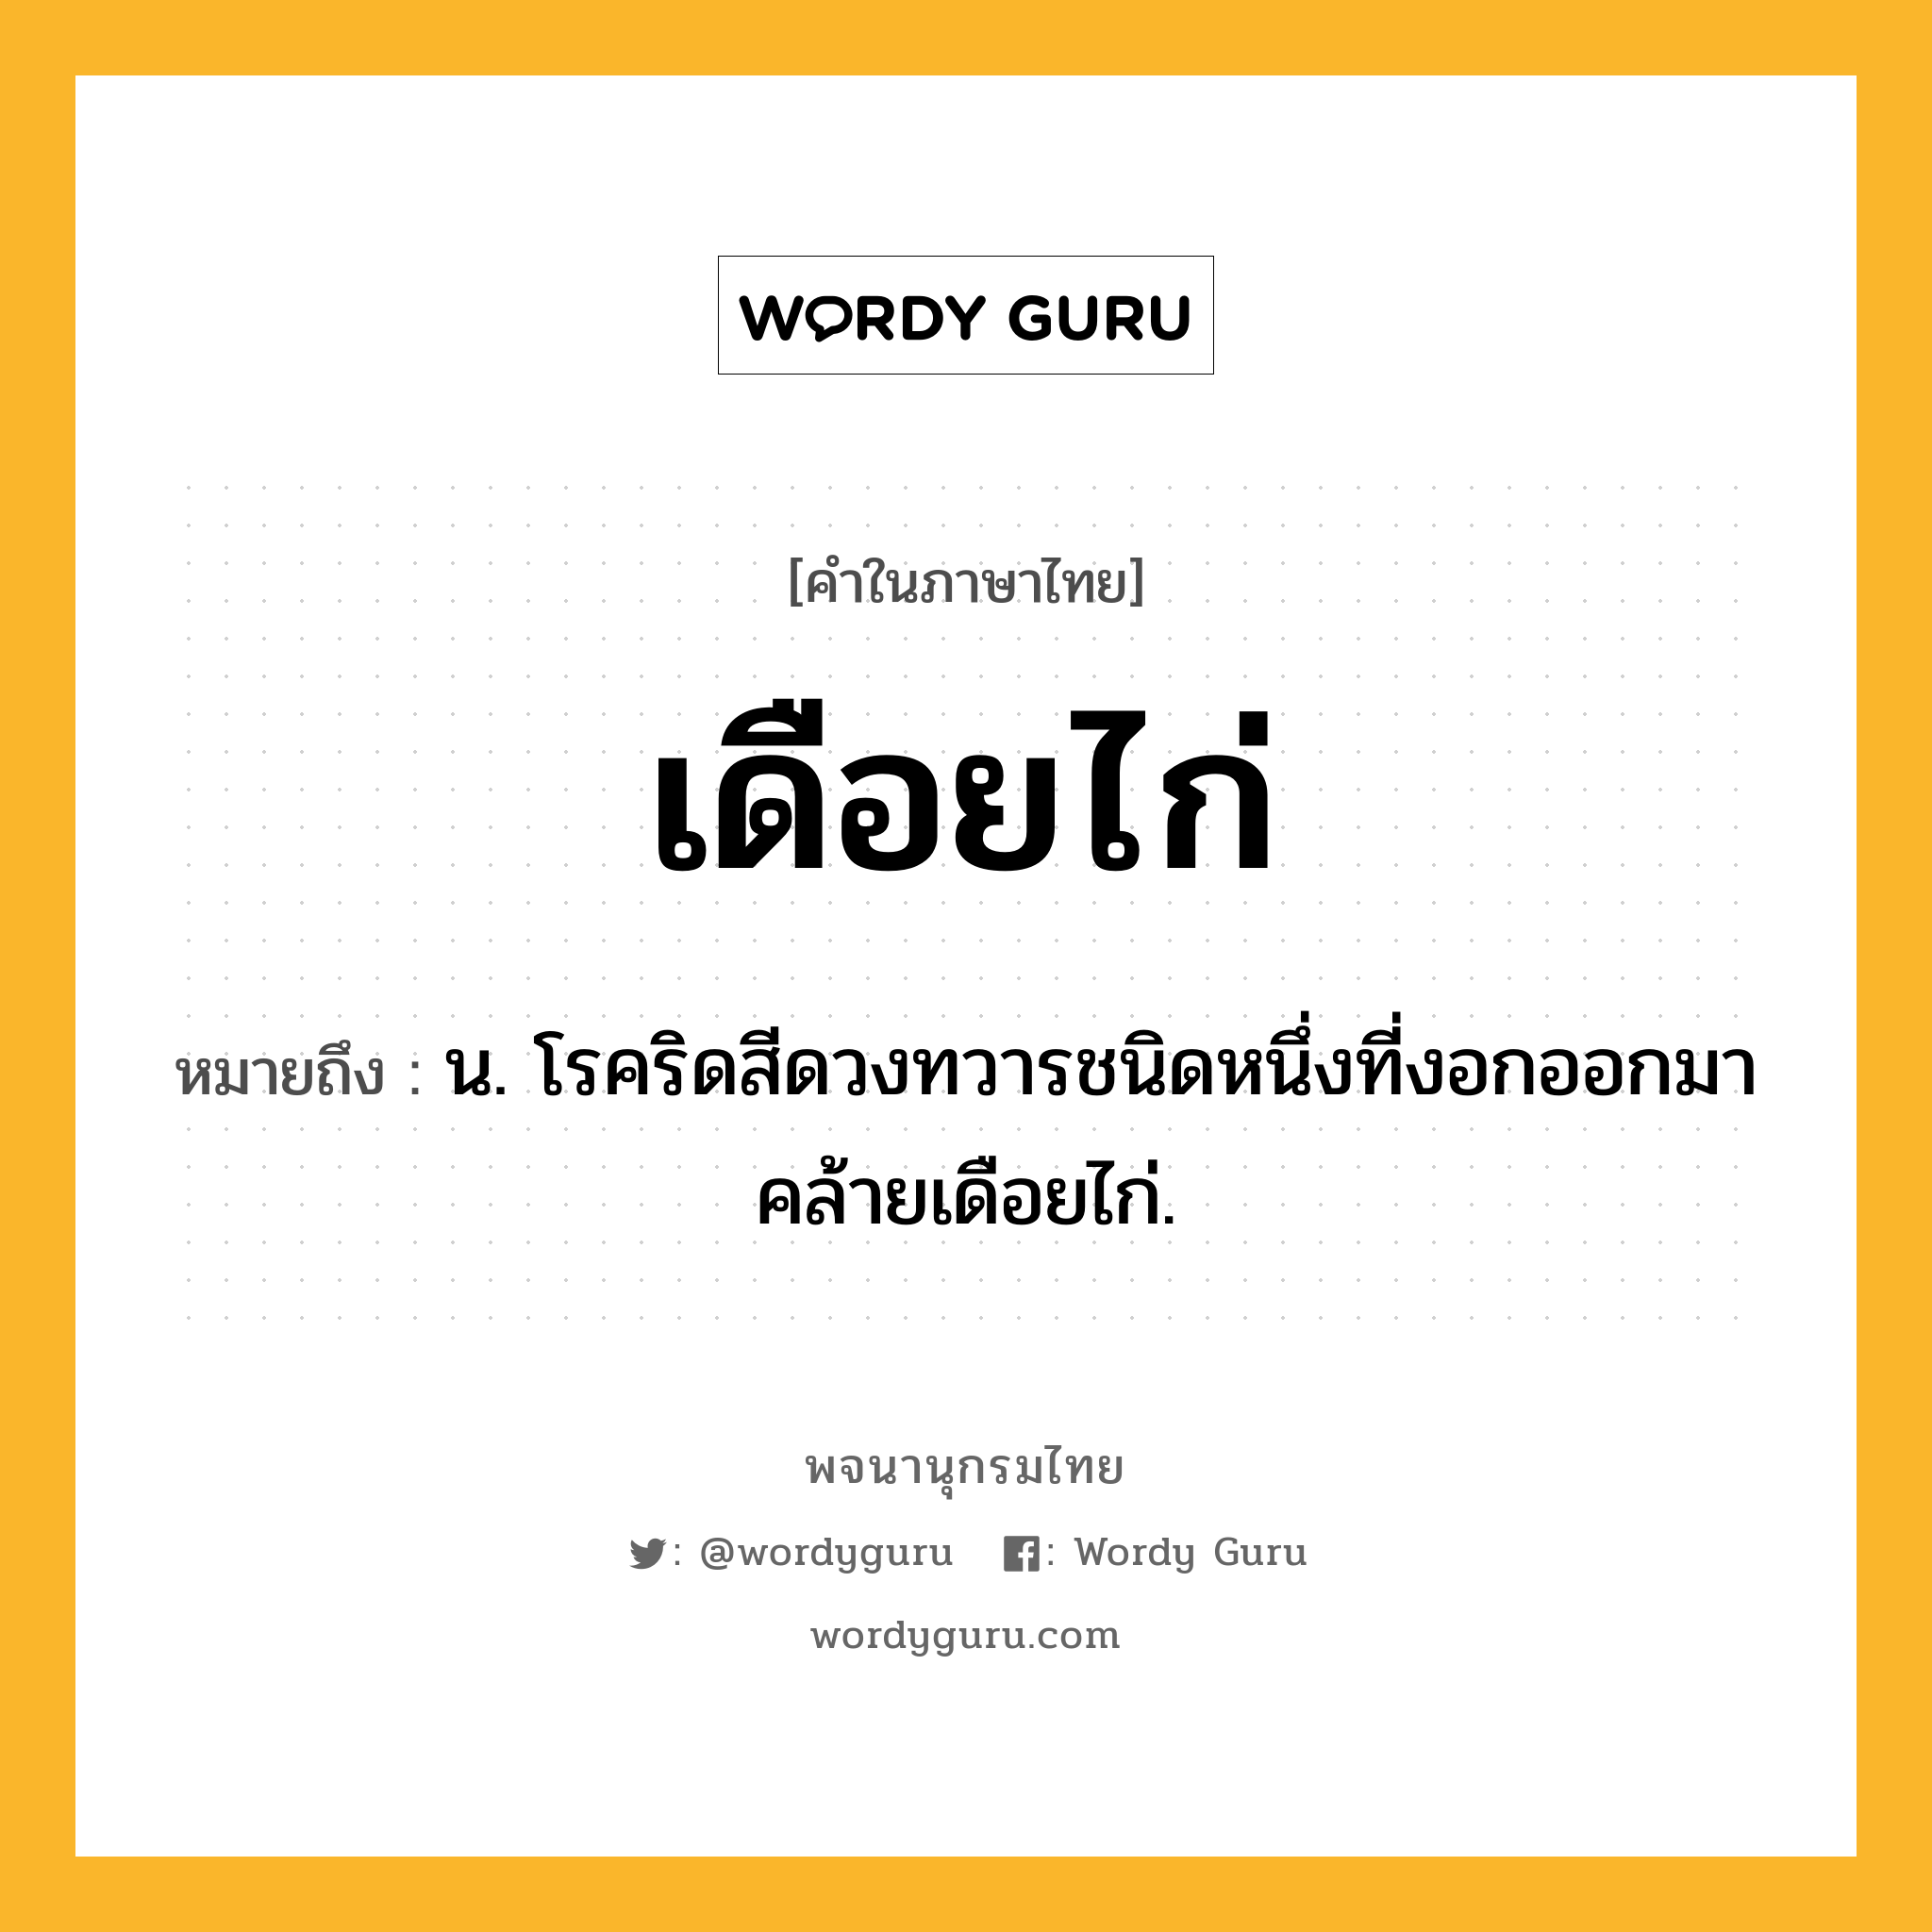 เดือยไก่ ความหมาย หมายถึงอะไร?, คำในภาษาไทย เดือยไก่ หมายถึง น. โรคริดสีดวงทวารชนิดหนึ่งที่งอกออกมาคล้ายเดือยไก่.